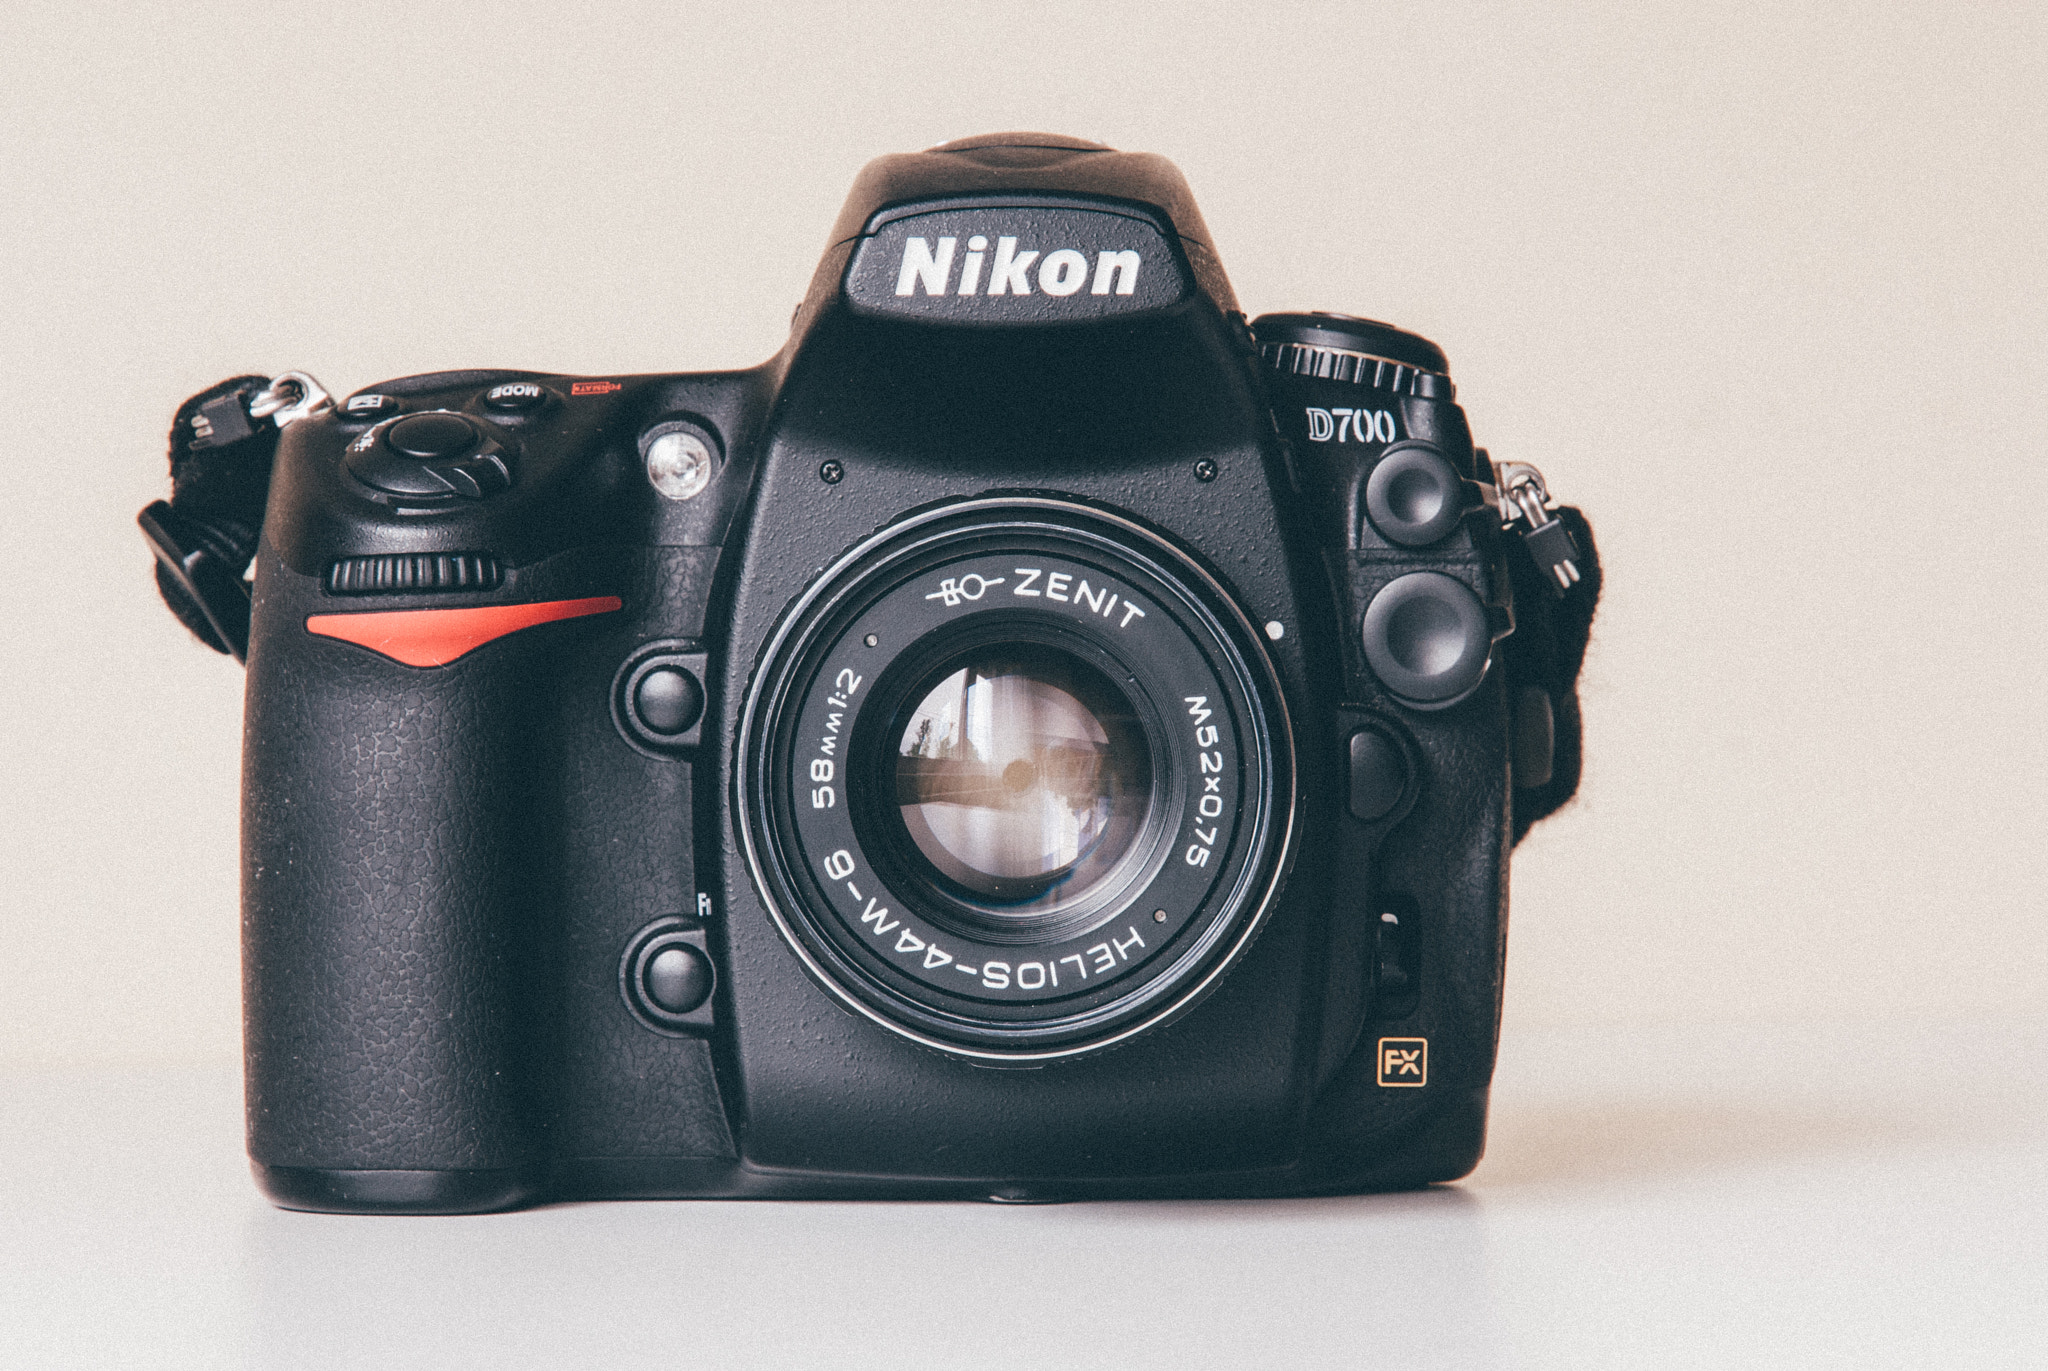 Nikon D200 + Nikon AF-S DX Nikkor 16-85mm F3.5-5.6G ED VR sample photo. Helios-44m-6 on nikon d700 photography